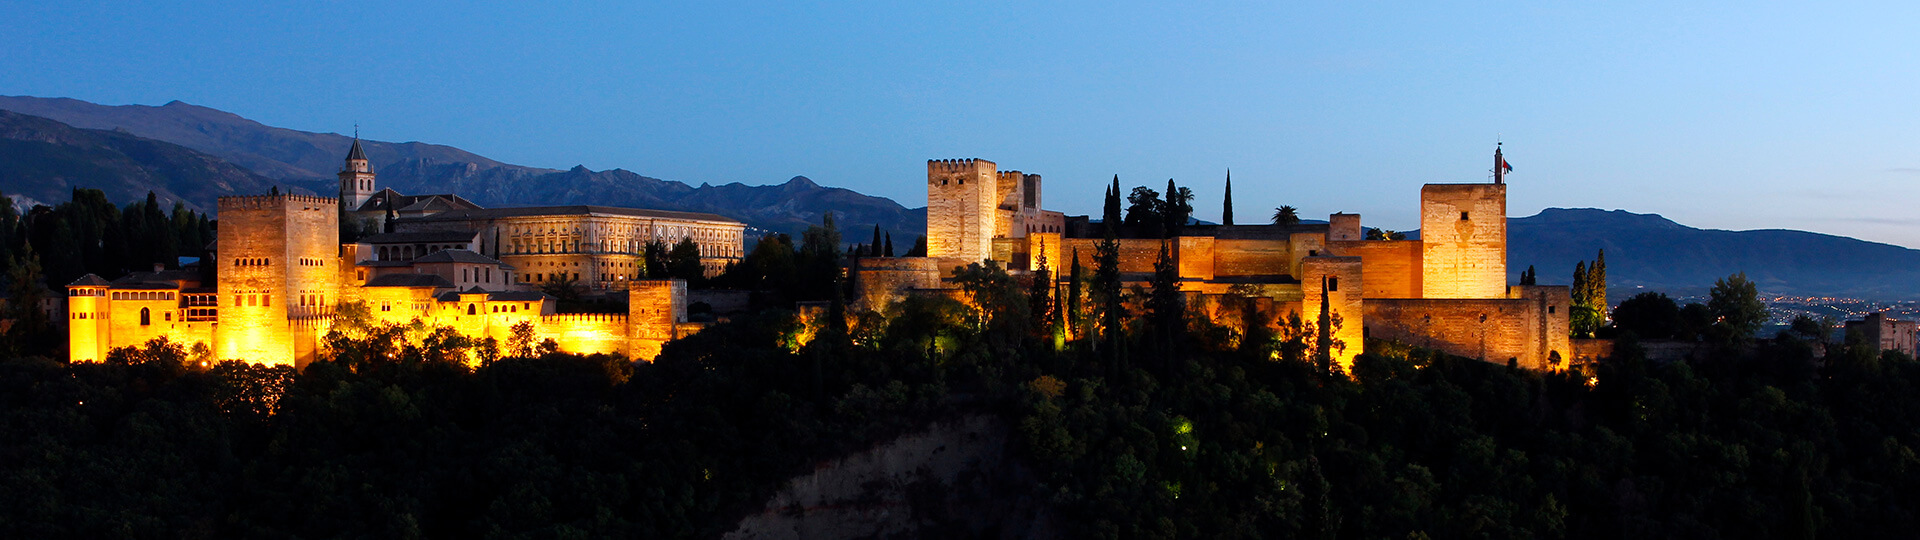 Widok panoramiczny na Alhambrę w Grenadzie nocą